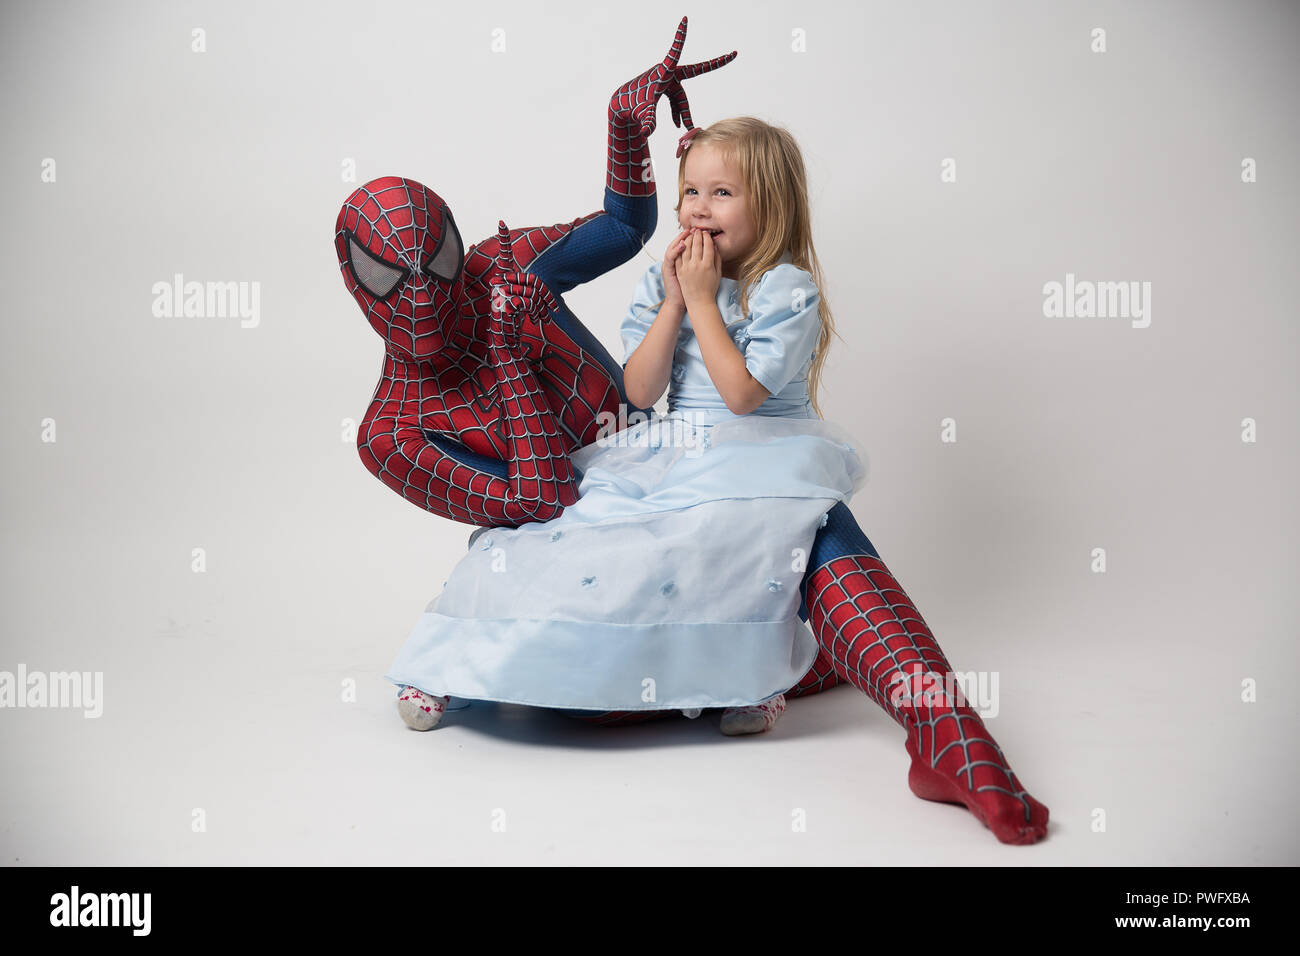 Israël, Tel Aviv, 14 octobre 2018. Le spiderman tient une petite fille dans  ses bras. Un homme dans un costume de spiderman sont venus pour féliciter  l'enfant pour son anniversaire. Location de